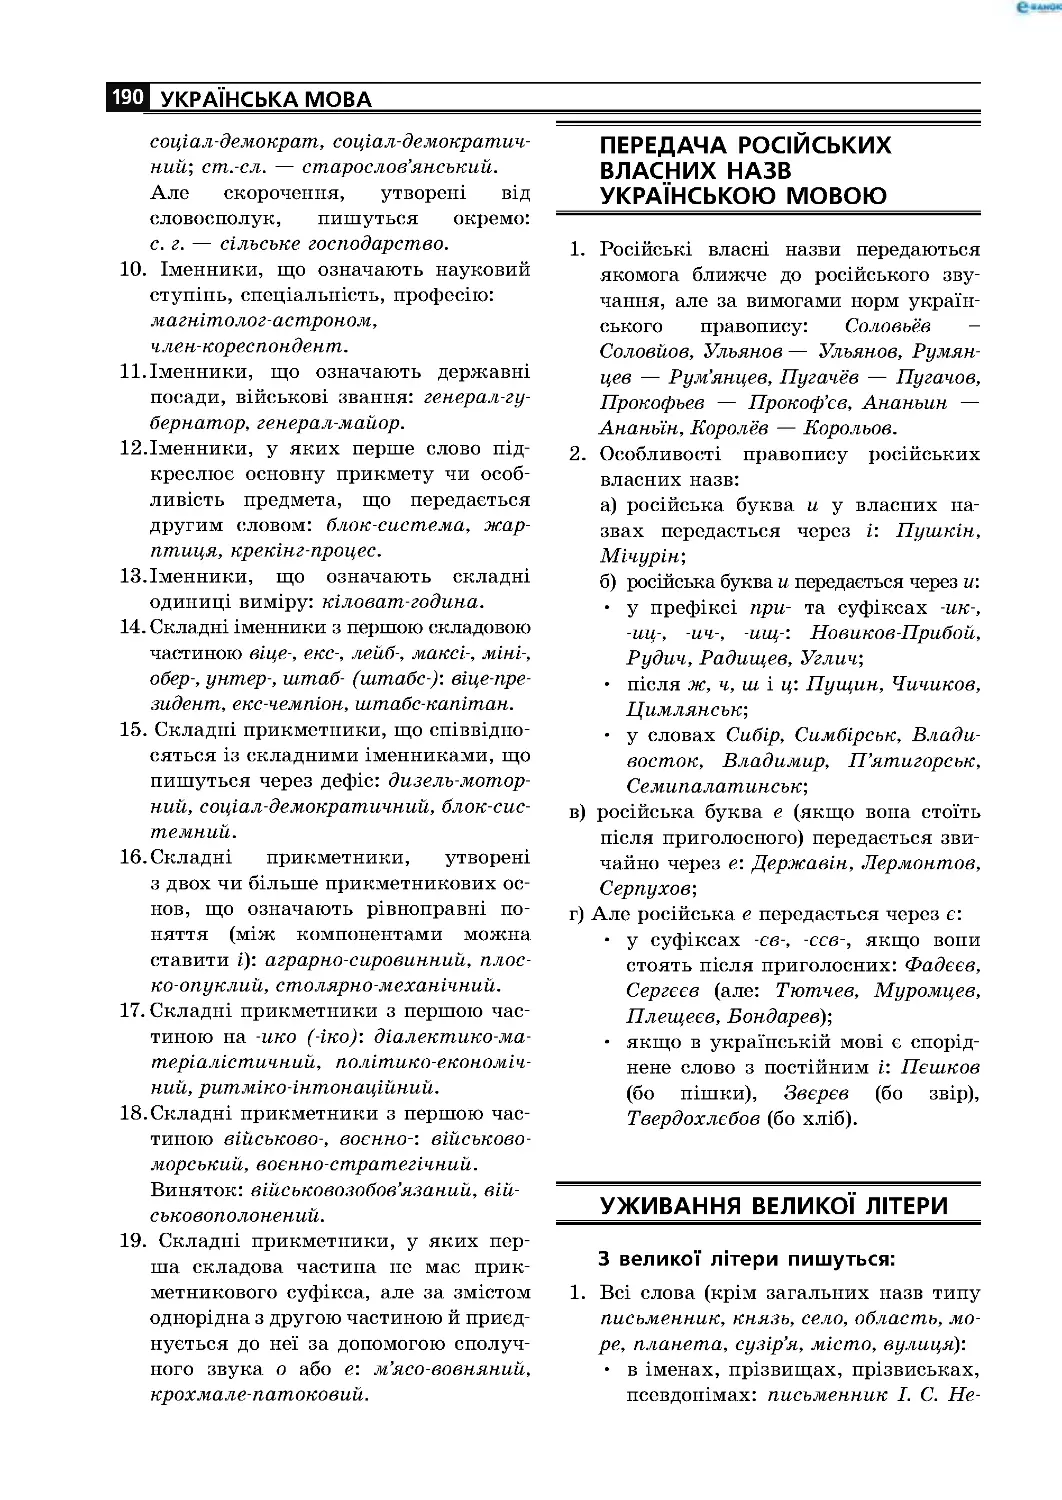 Передача російських власних
назв українською мовою
Уживання великої літери